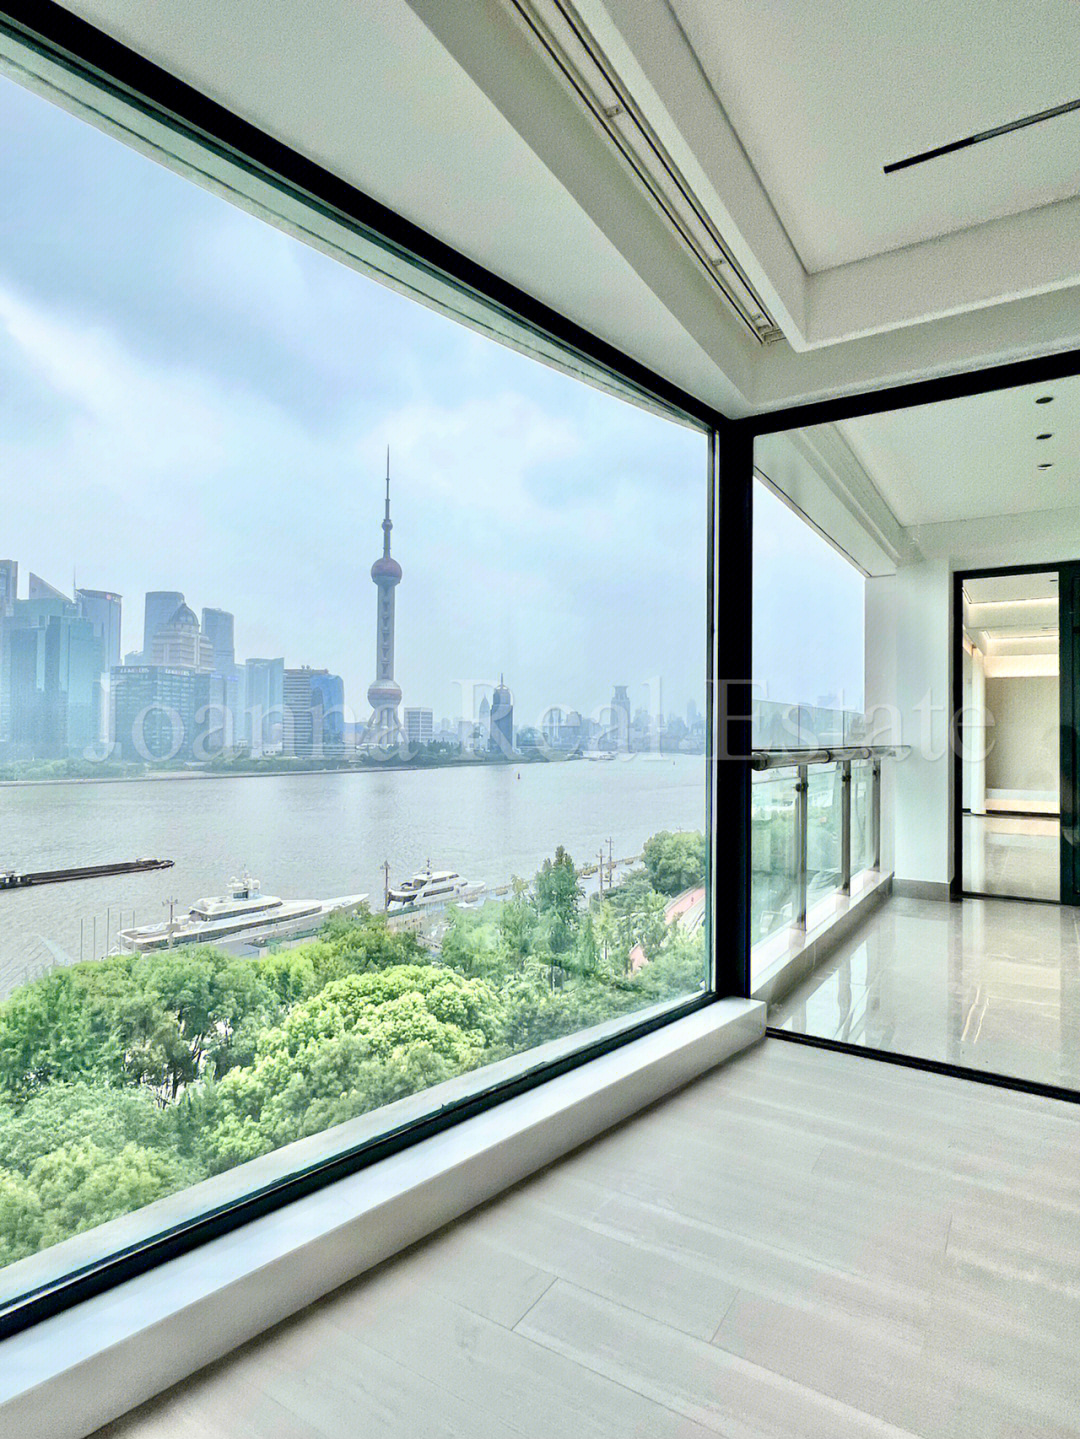 上海租房北外滩因为窗和露台决定租下房子